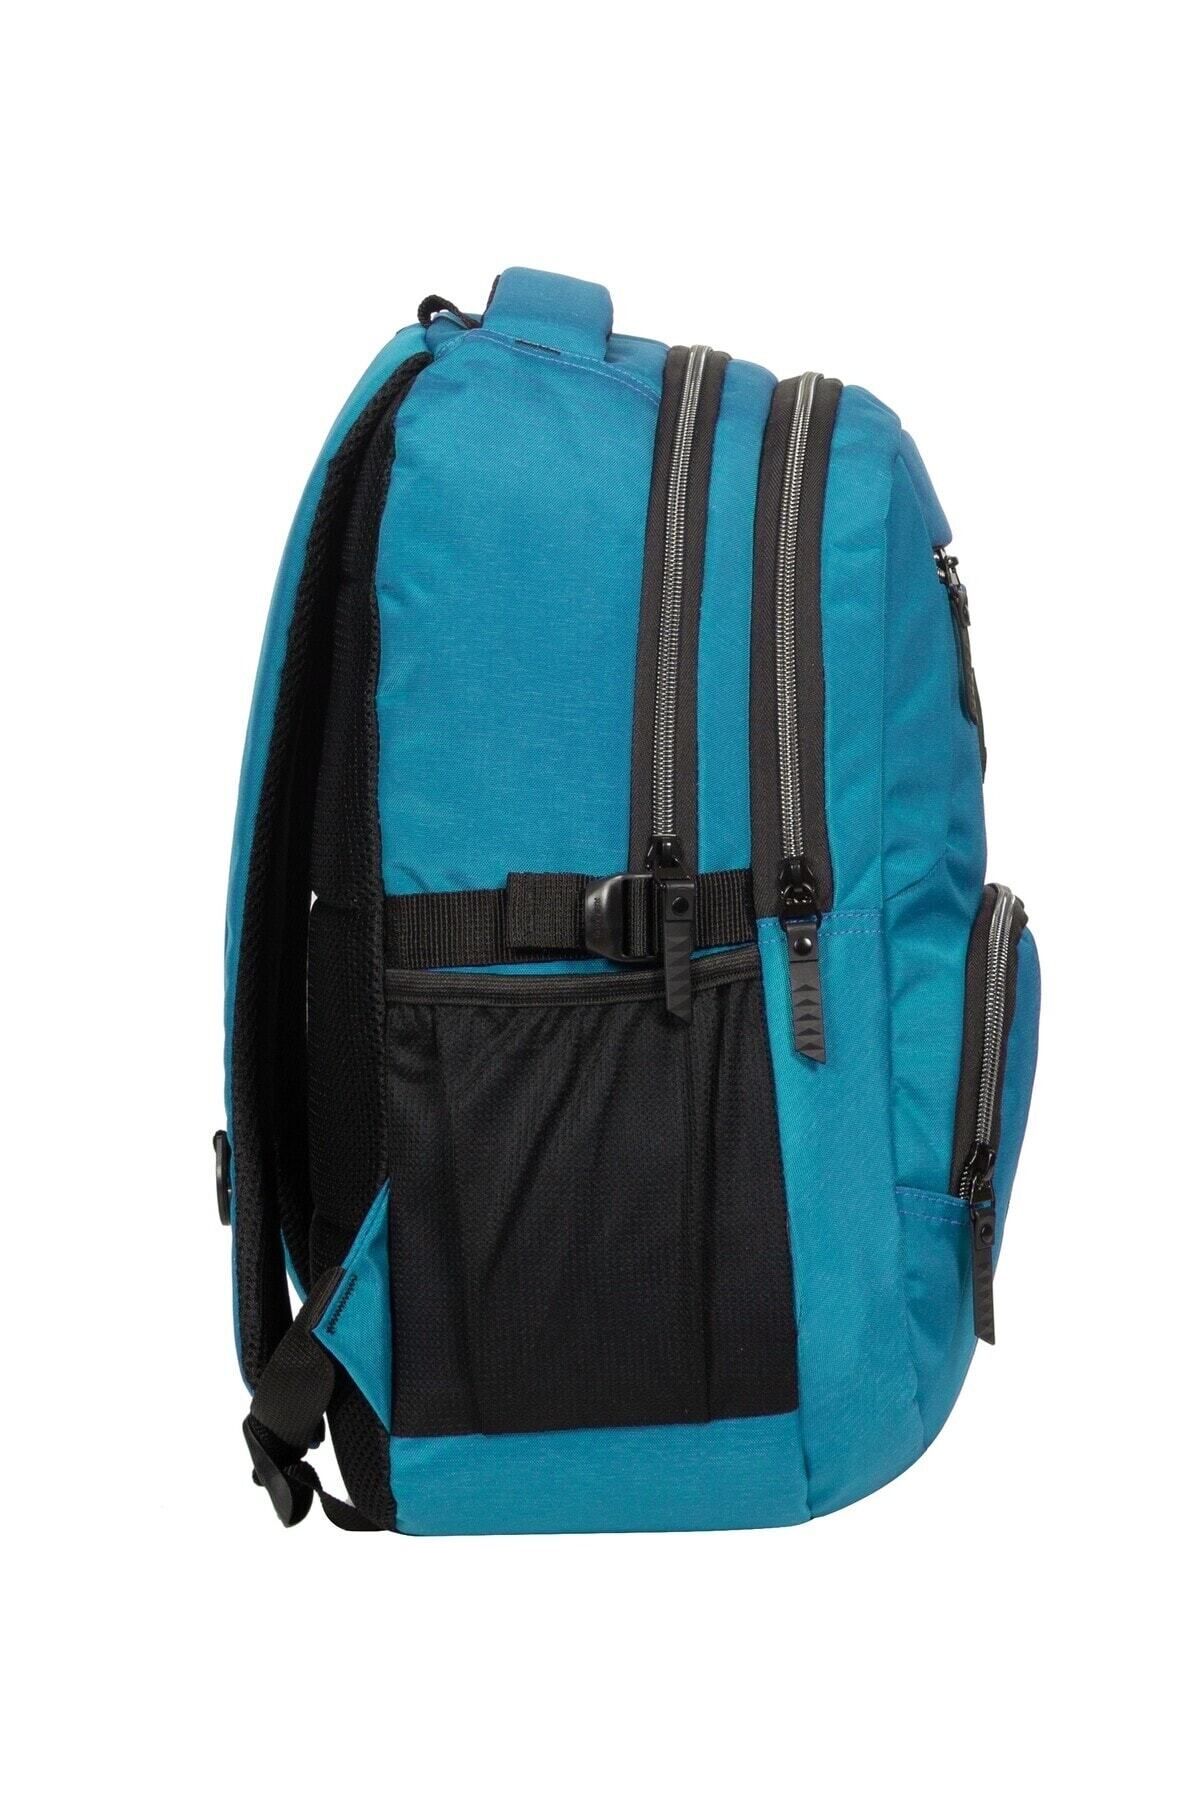 Flipkart.com | SIRIUS High School Bag pink & navy blue Backpack - Backpack